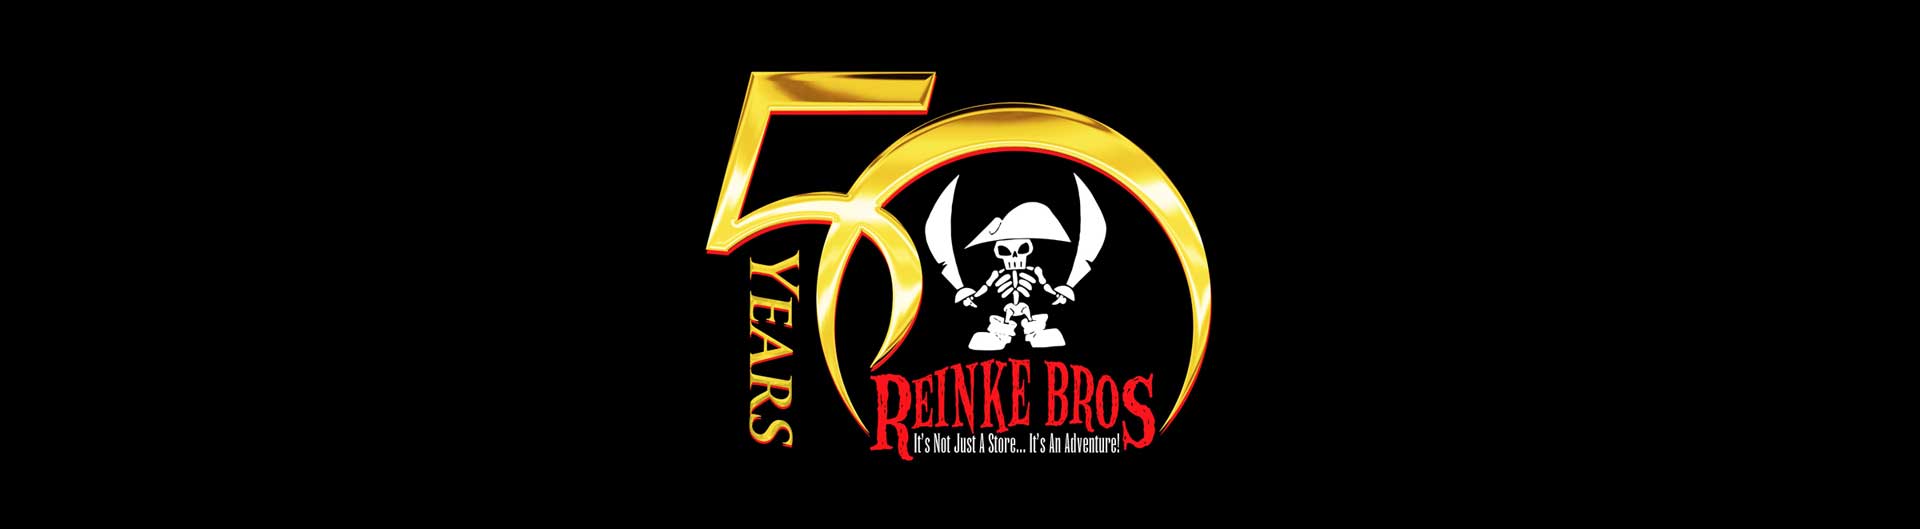 Reinke Logo - Reinke Brothers Store